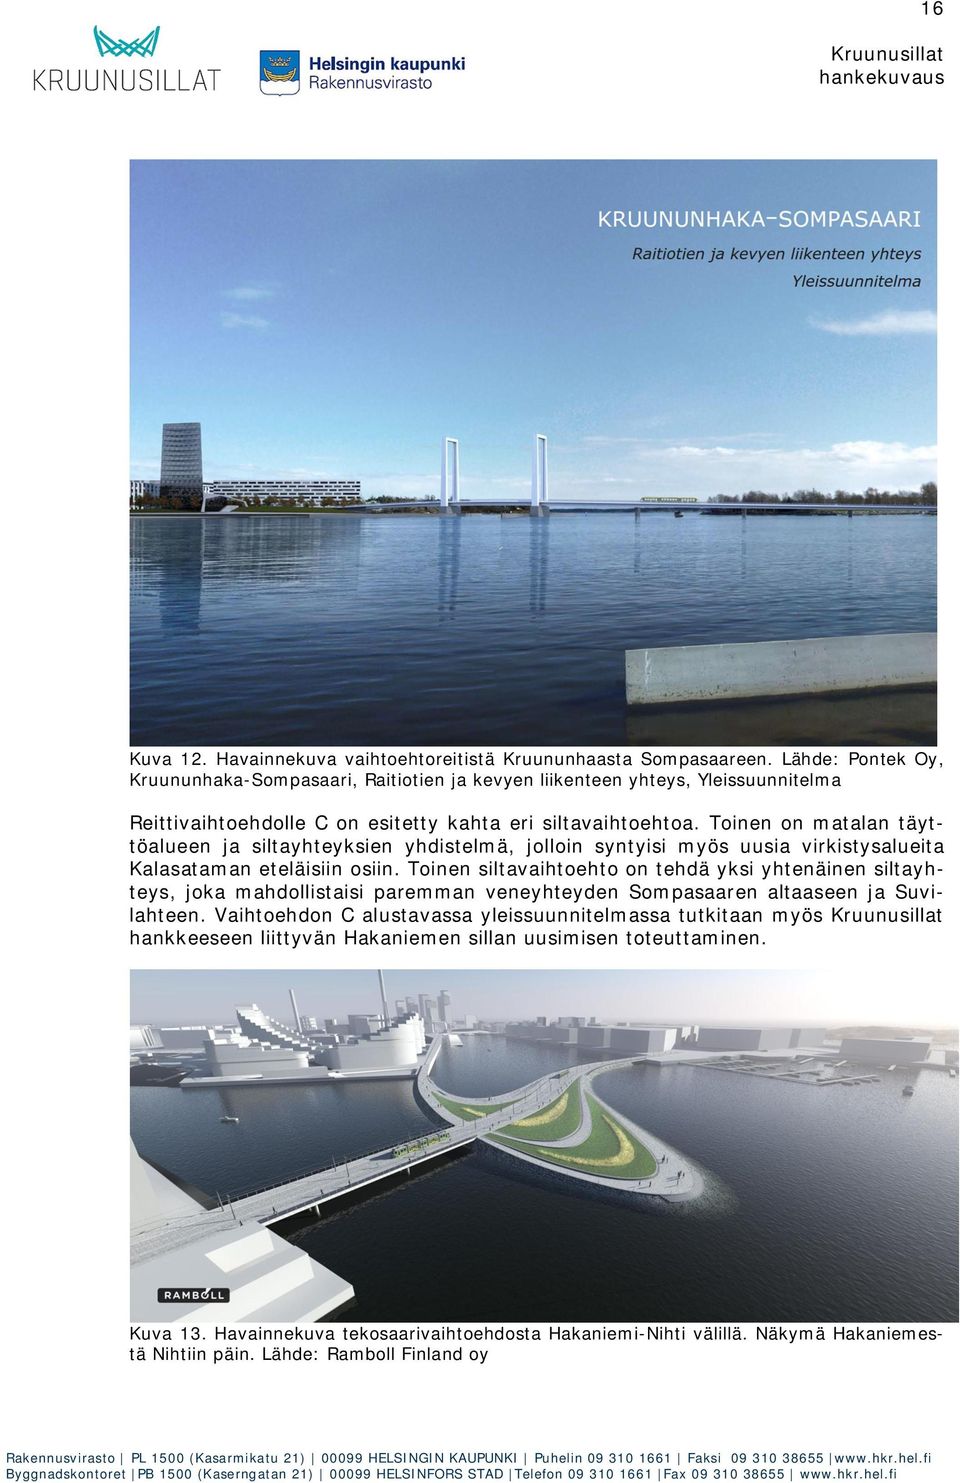 Toinen on matalan täyttöalueen ja siltayhteyksien yhdistelmä, jolloin syntyisi myös uusia virkistysalueita Kalasataman eteläisiin osiin.